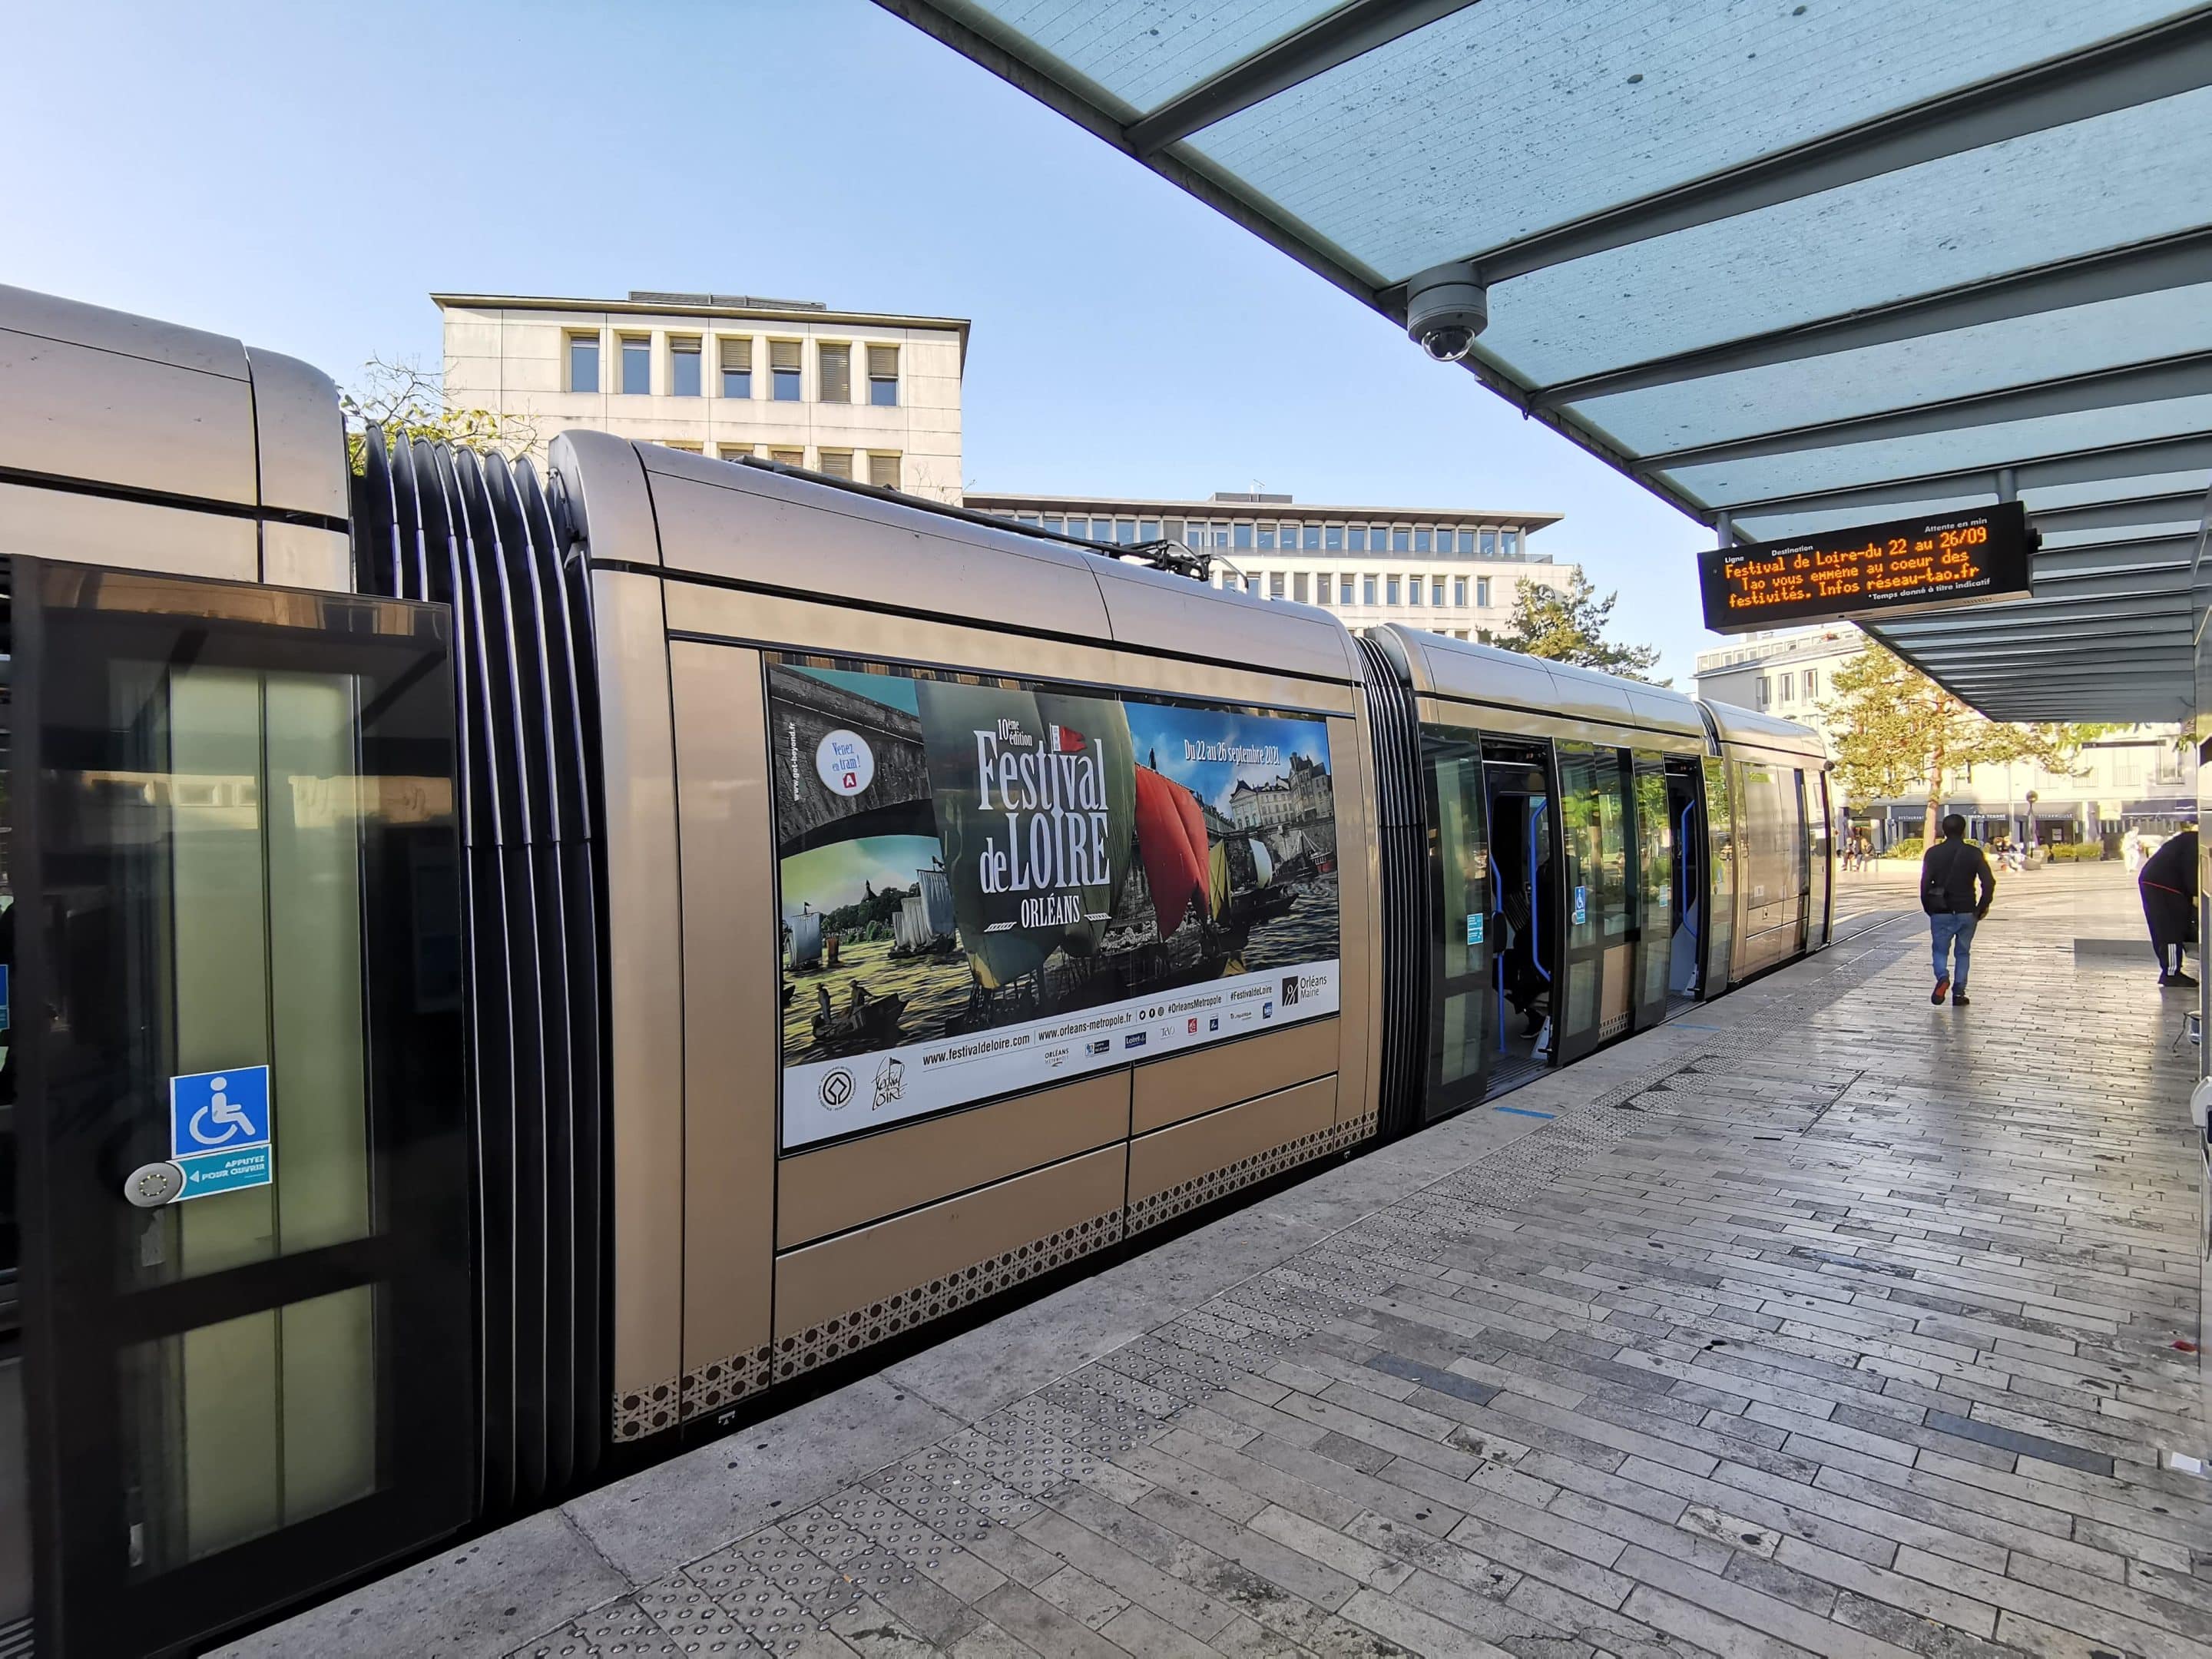 Tram Orléans - Festival de Loire 2021